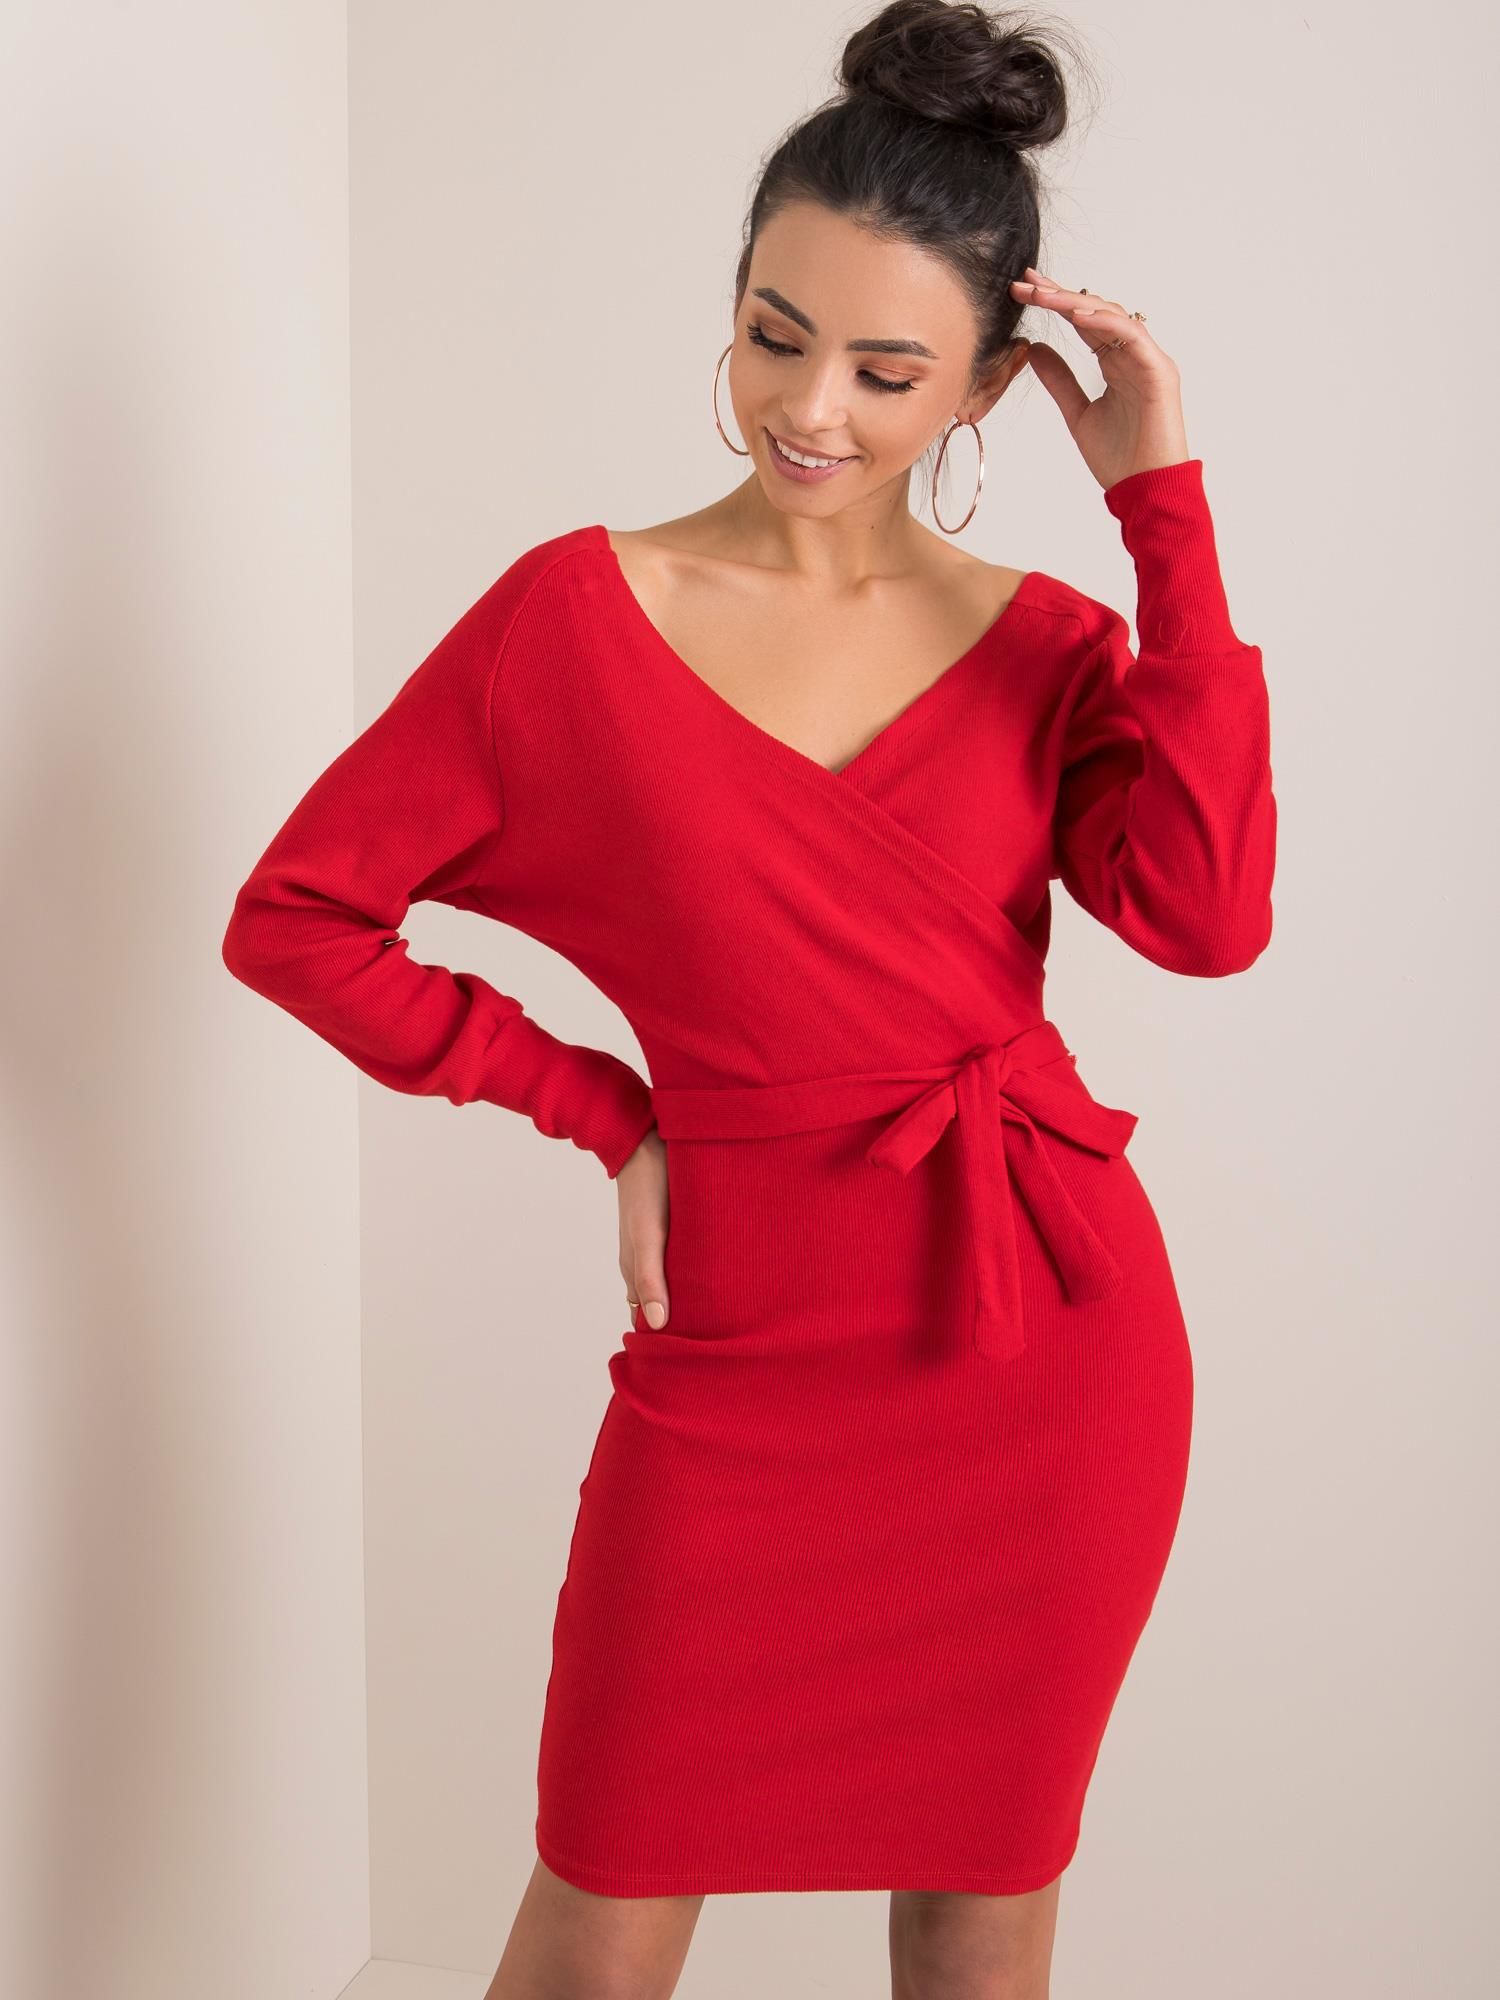 Dámské červené šaty s páskem RV-SK-5297.23P-red Velikost: XL